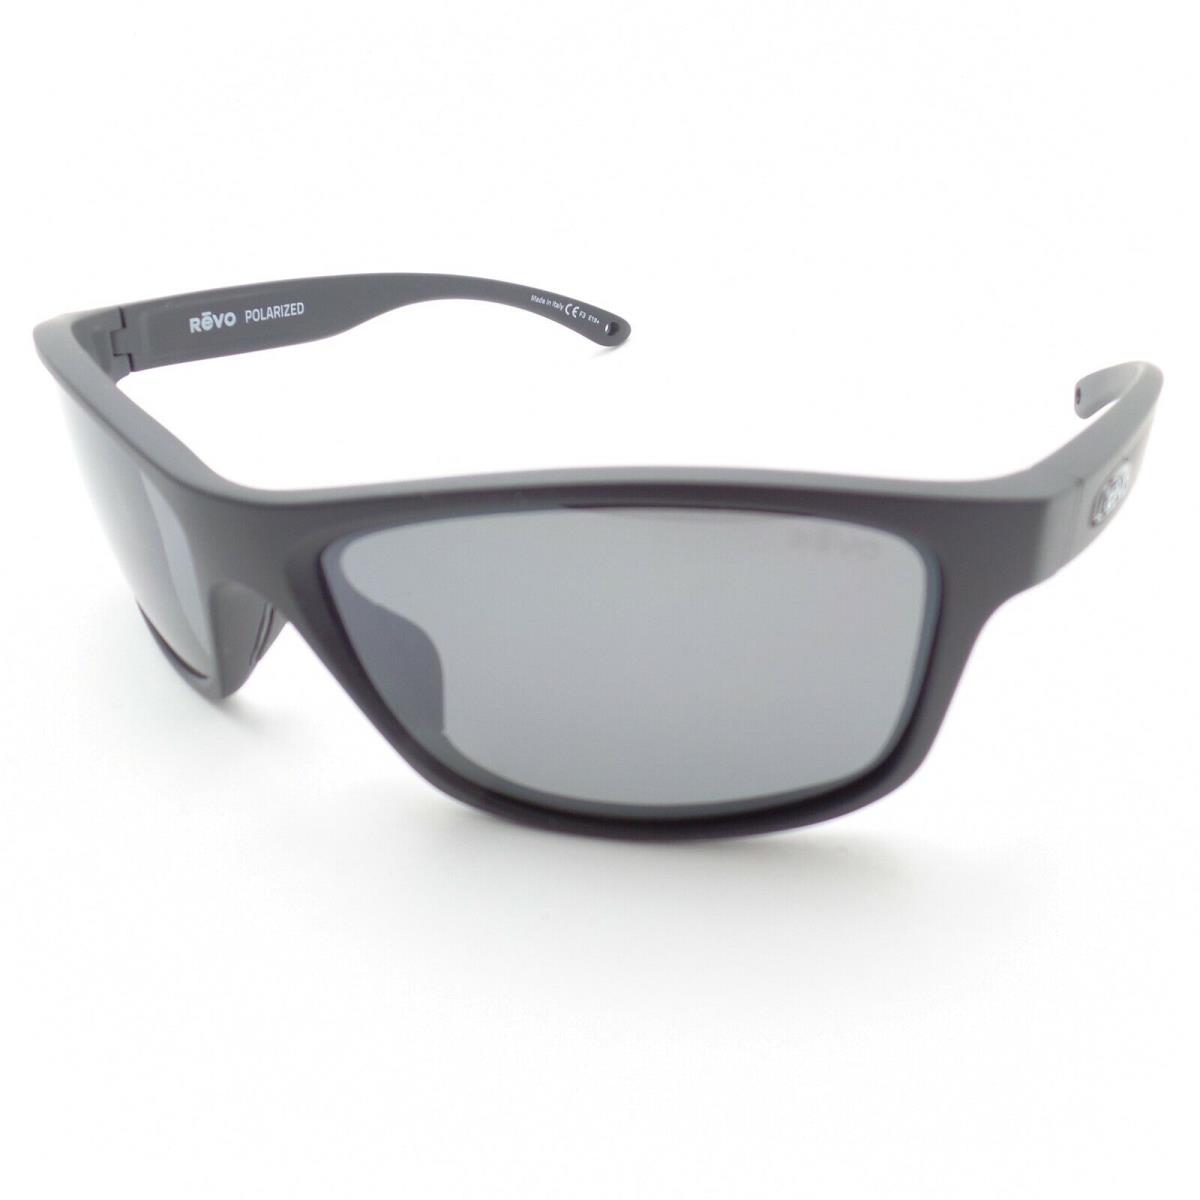 Revo sunglasses  - Matte Black , Black Frame, Gray Lens